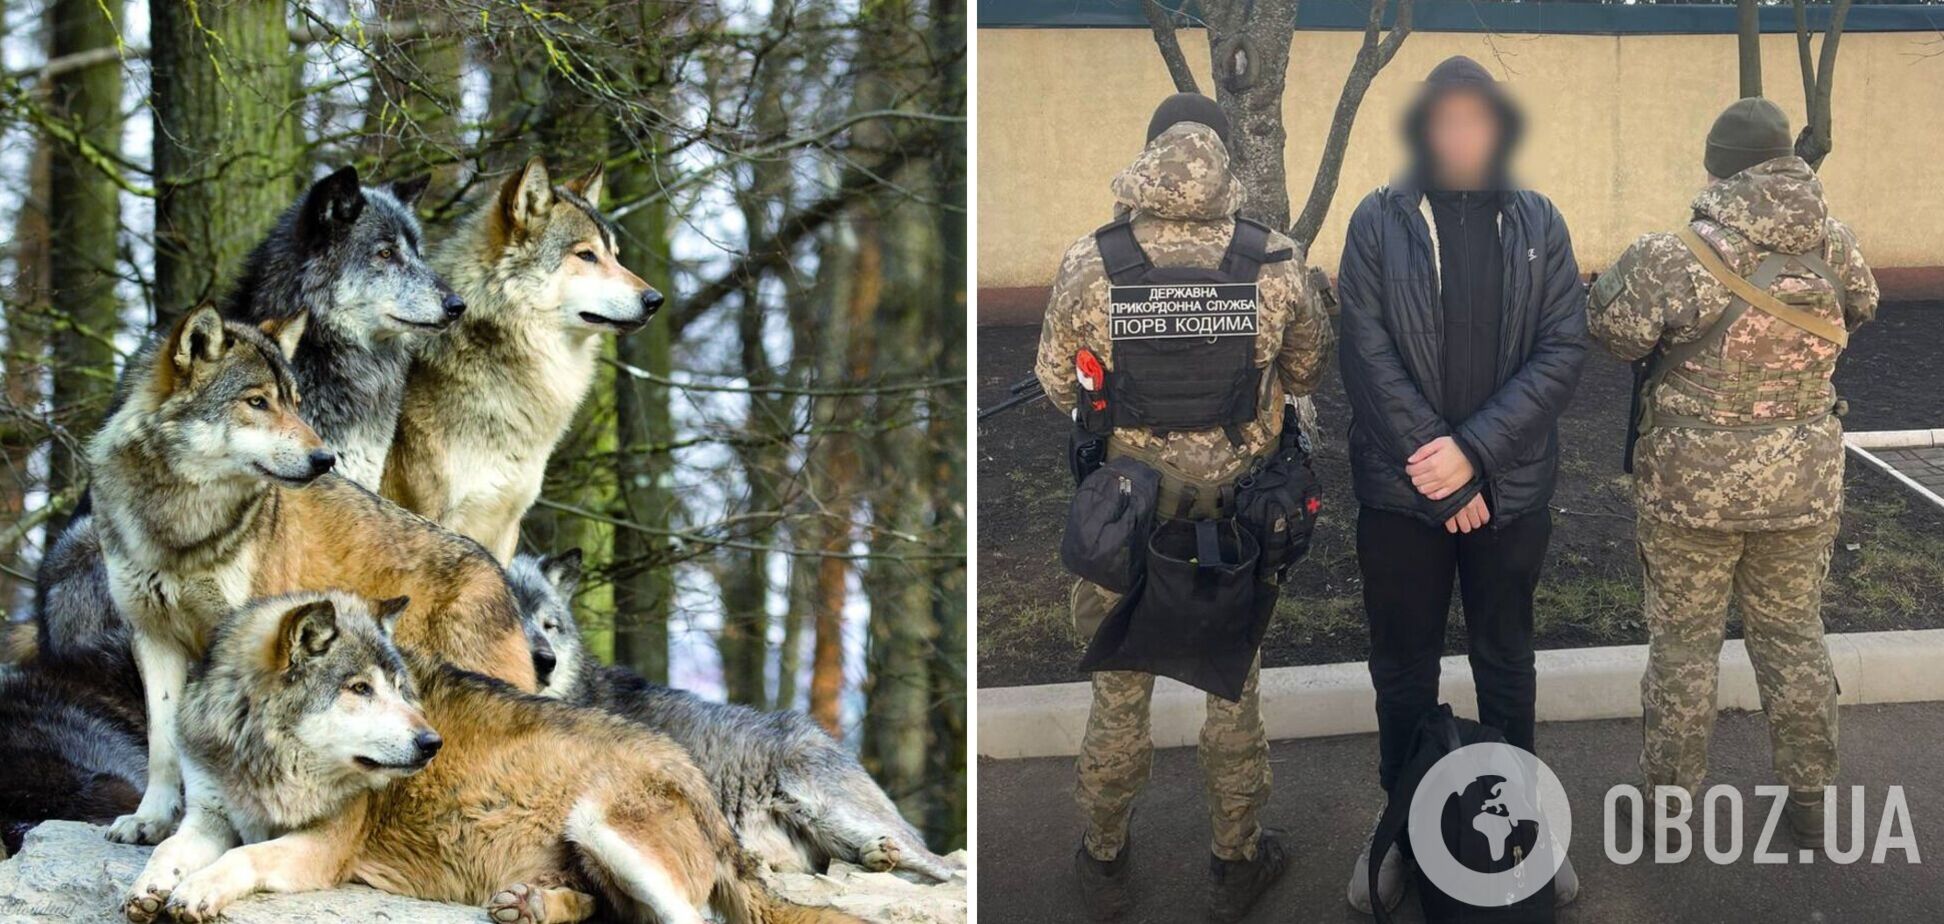 'Хотів перетнути кордон, але зустрів вовків': в Одеській області ухилянт-невдаха здався прикордонникам. Фото